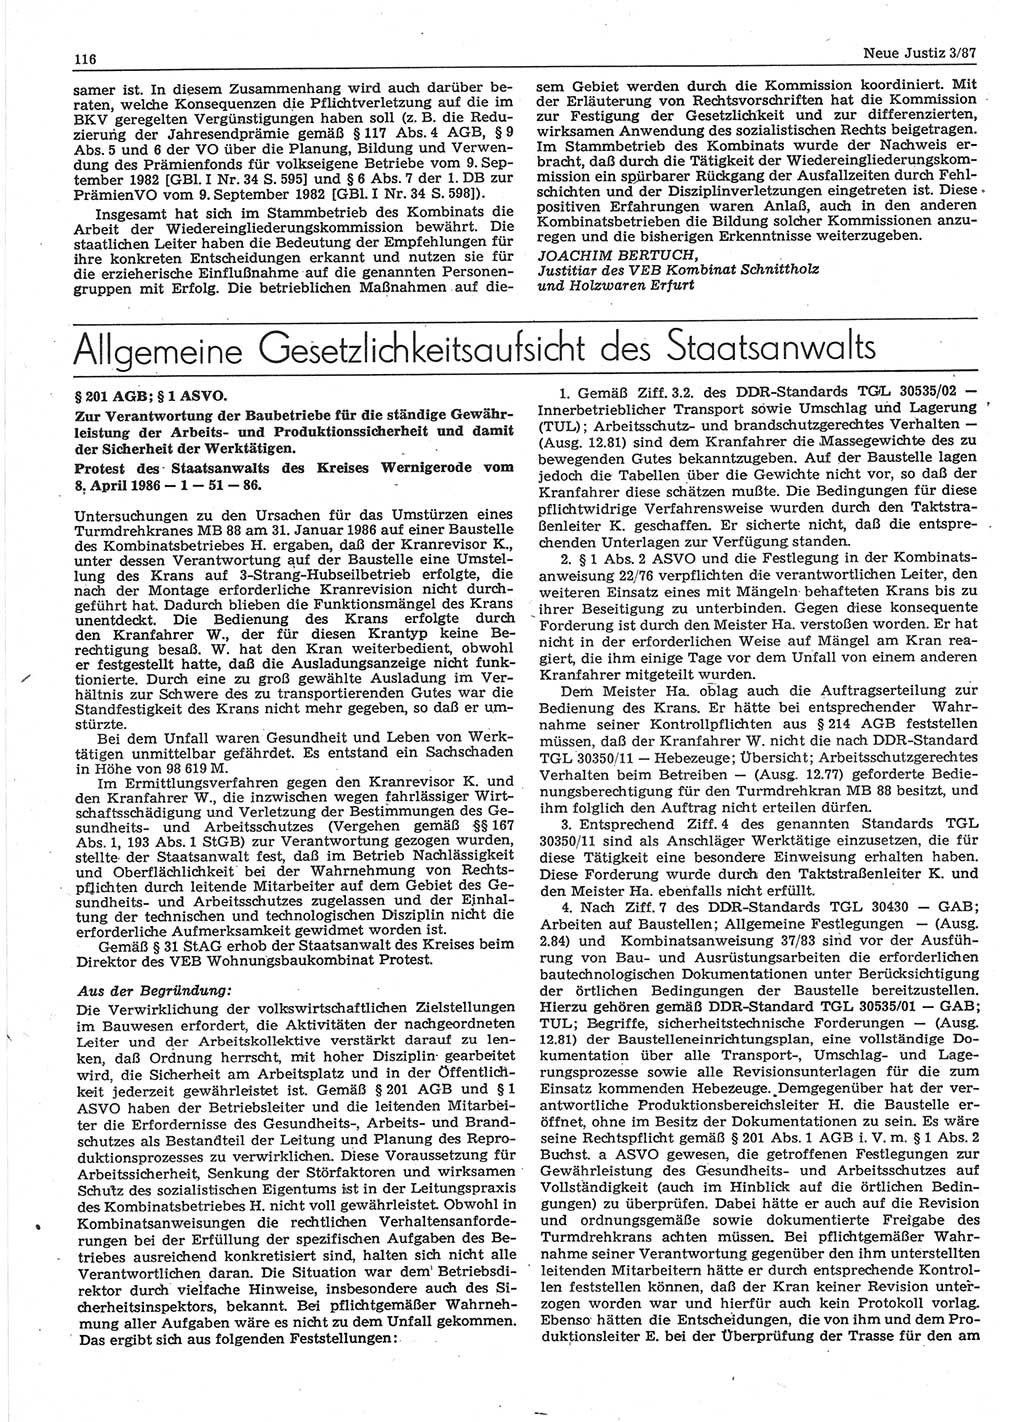 Neue Justiz (NJ), Zeitschrift für sozialistisches Recht und Gesetzlichkeit [Deutsche Demokratische Republik (DDR)], 41. Jahrgang 1987, Seite 116 (NJ DDR 1987, S. 116)